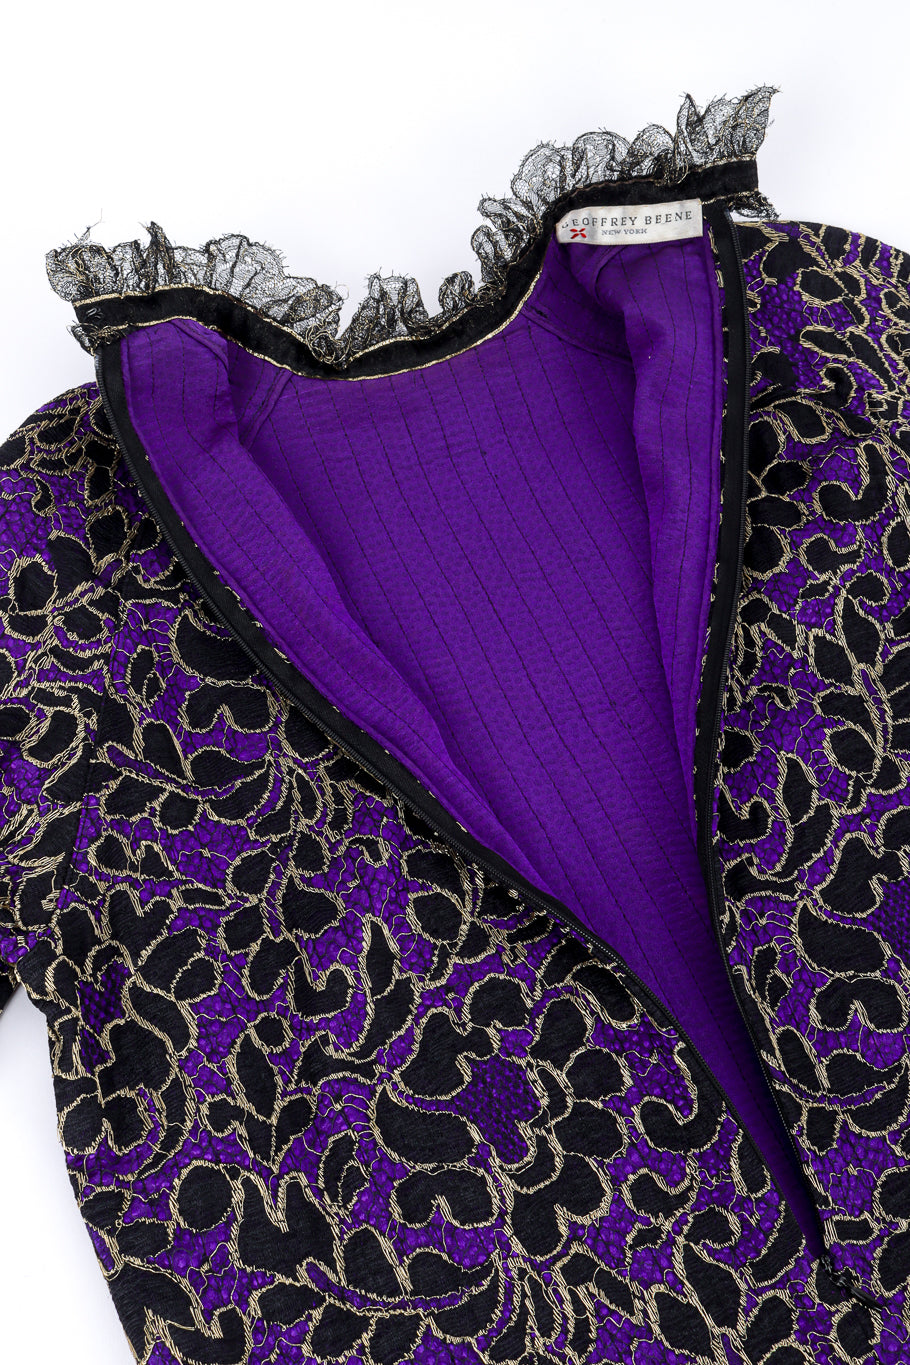 Vintage Geoffrey Beene Lace Silk Top back unzipped @recessla